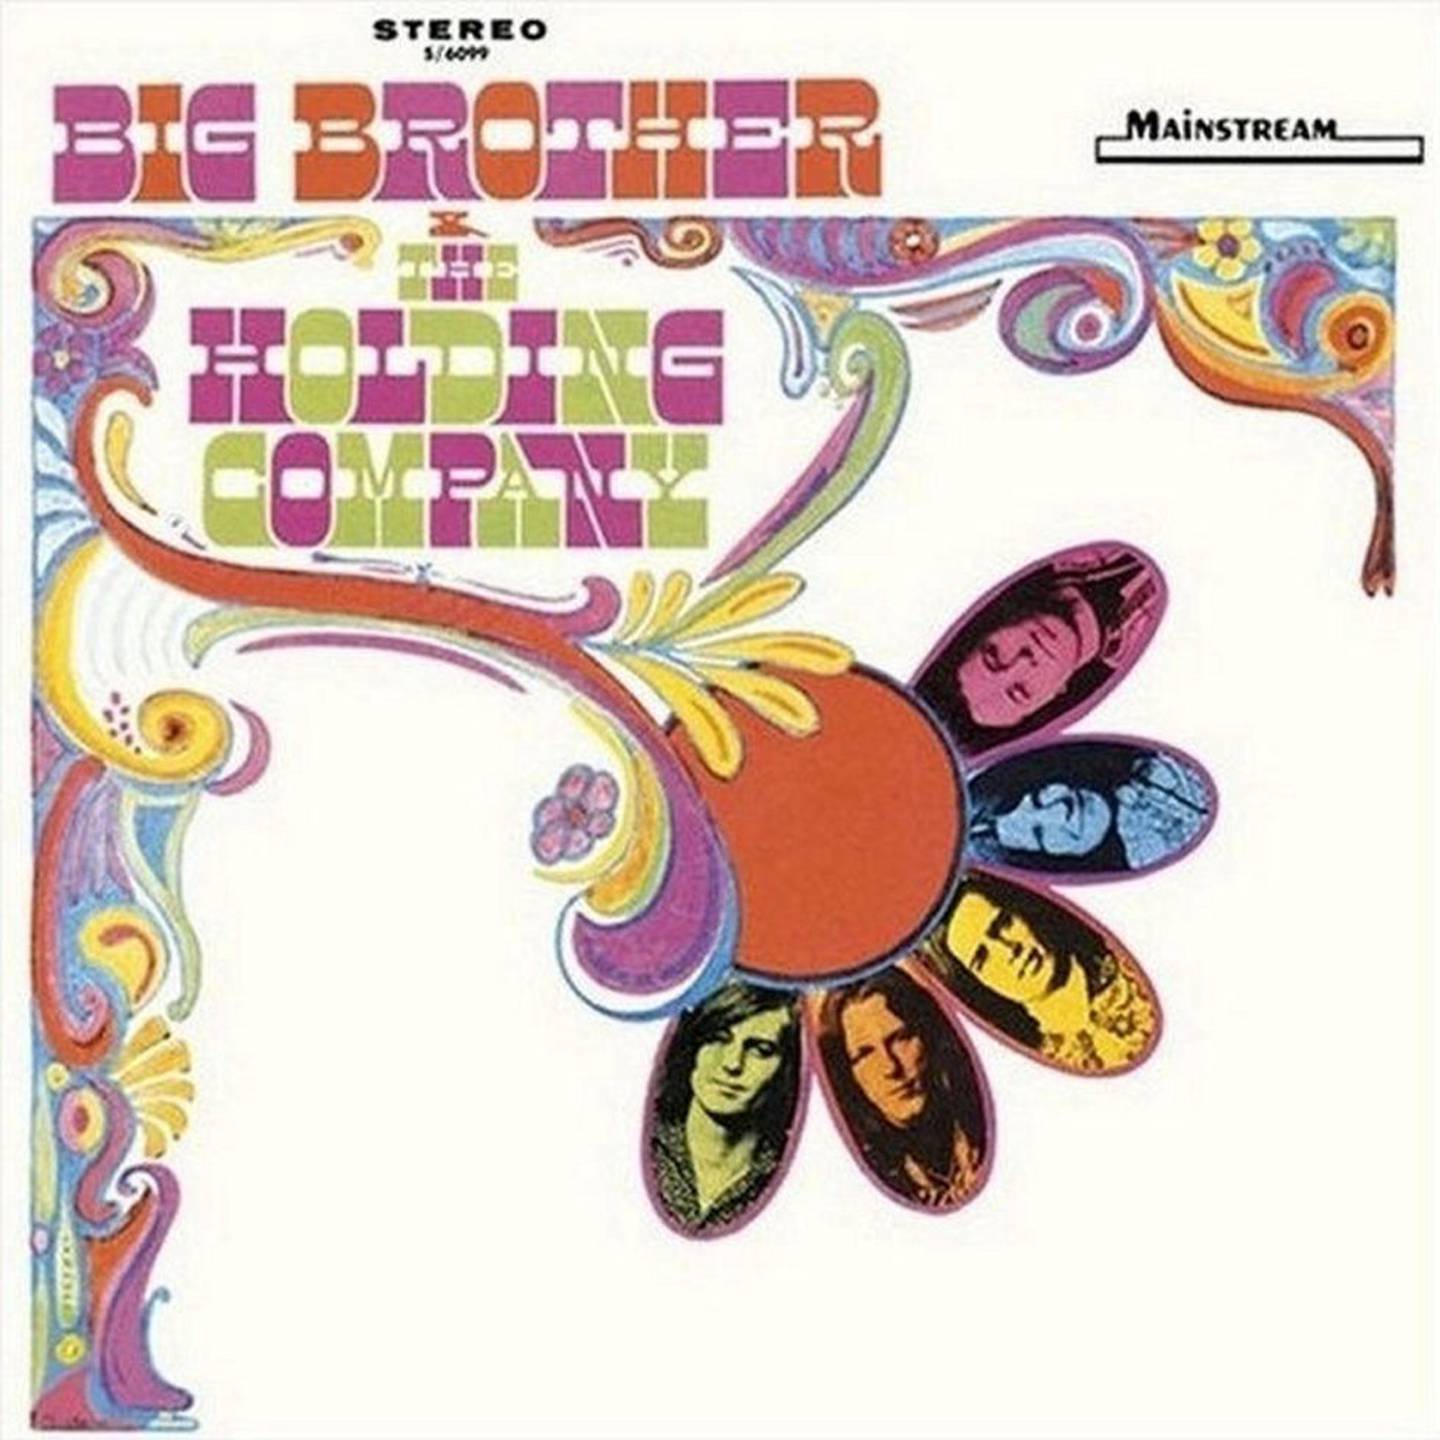 Det tidstypiske omslaget på det første albumet til Janis Joplin og Big Brother Holding Company fra 1967.